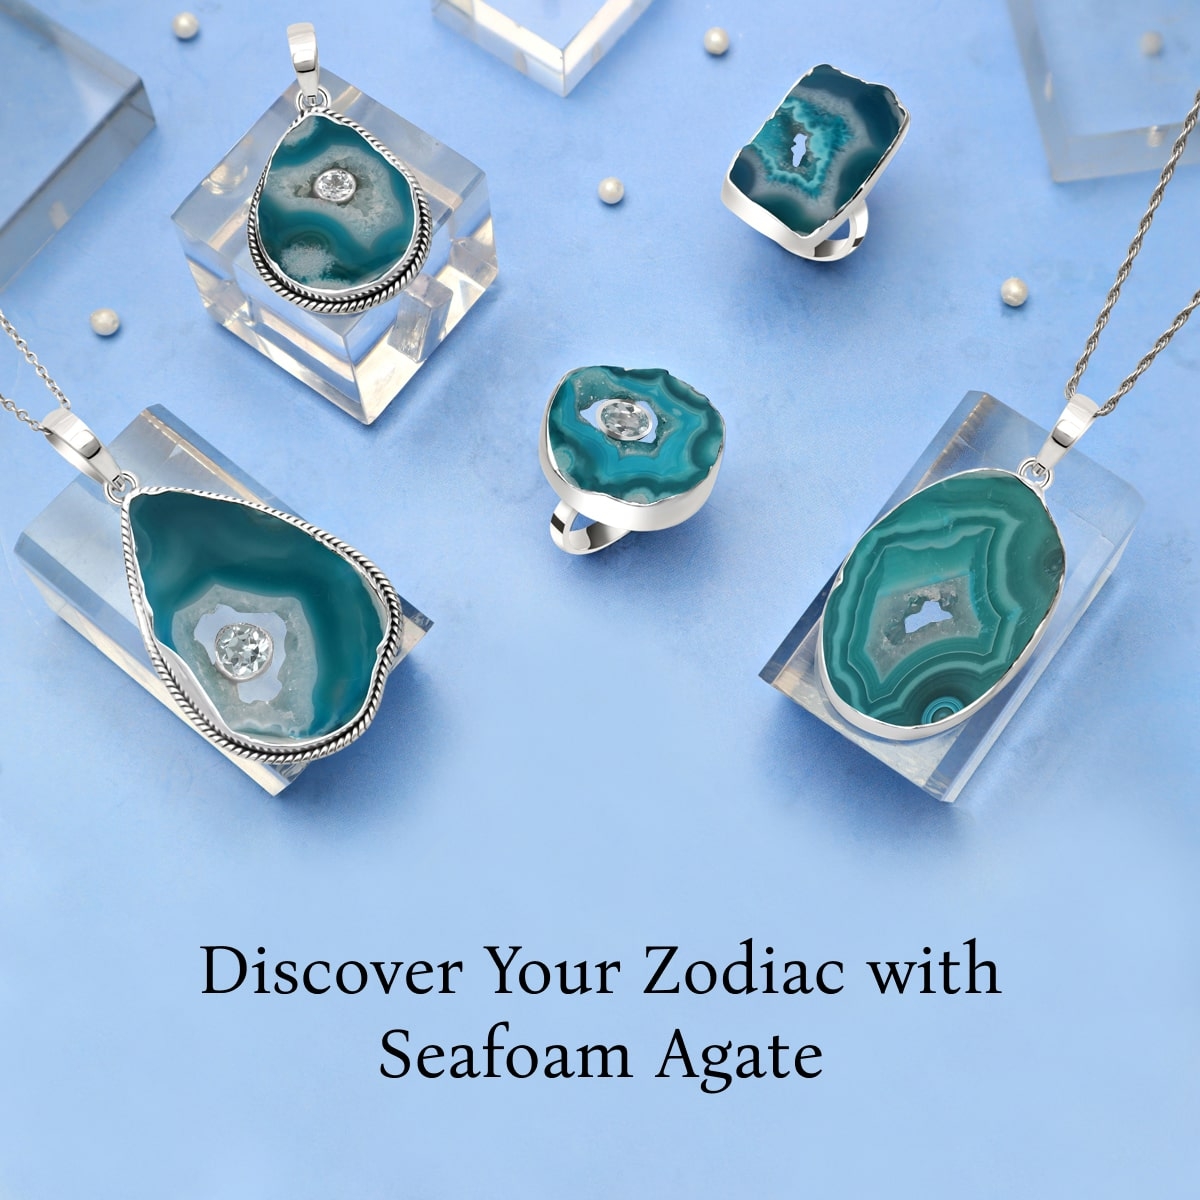 Zodiac Sign of Seafoam agate